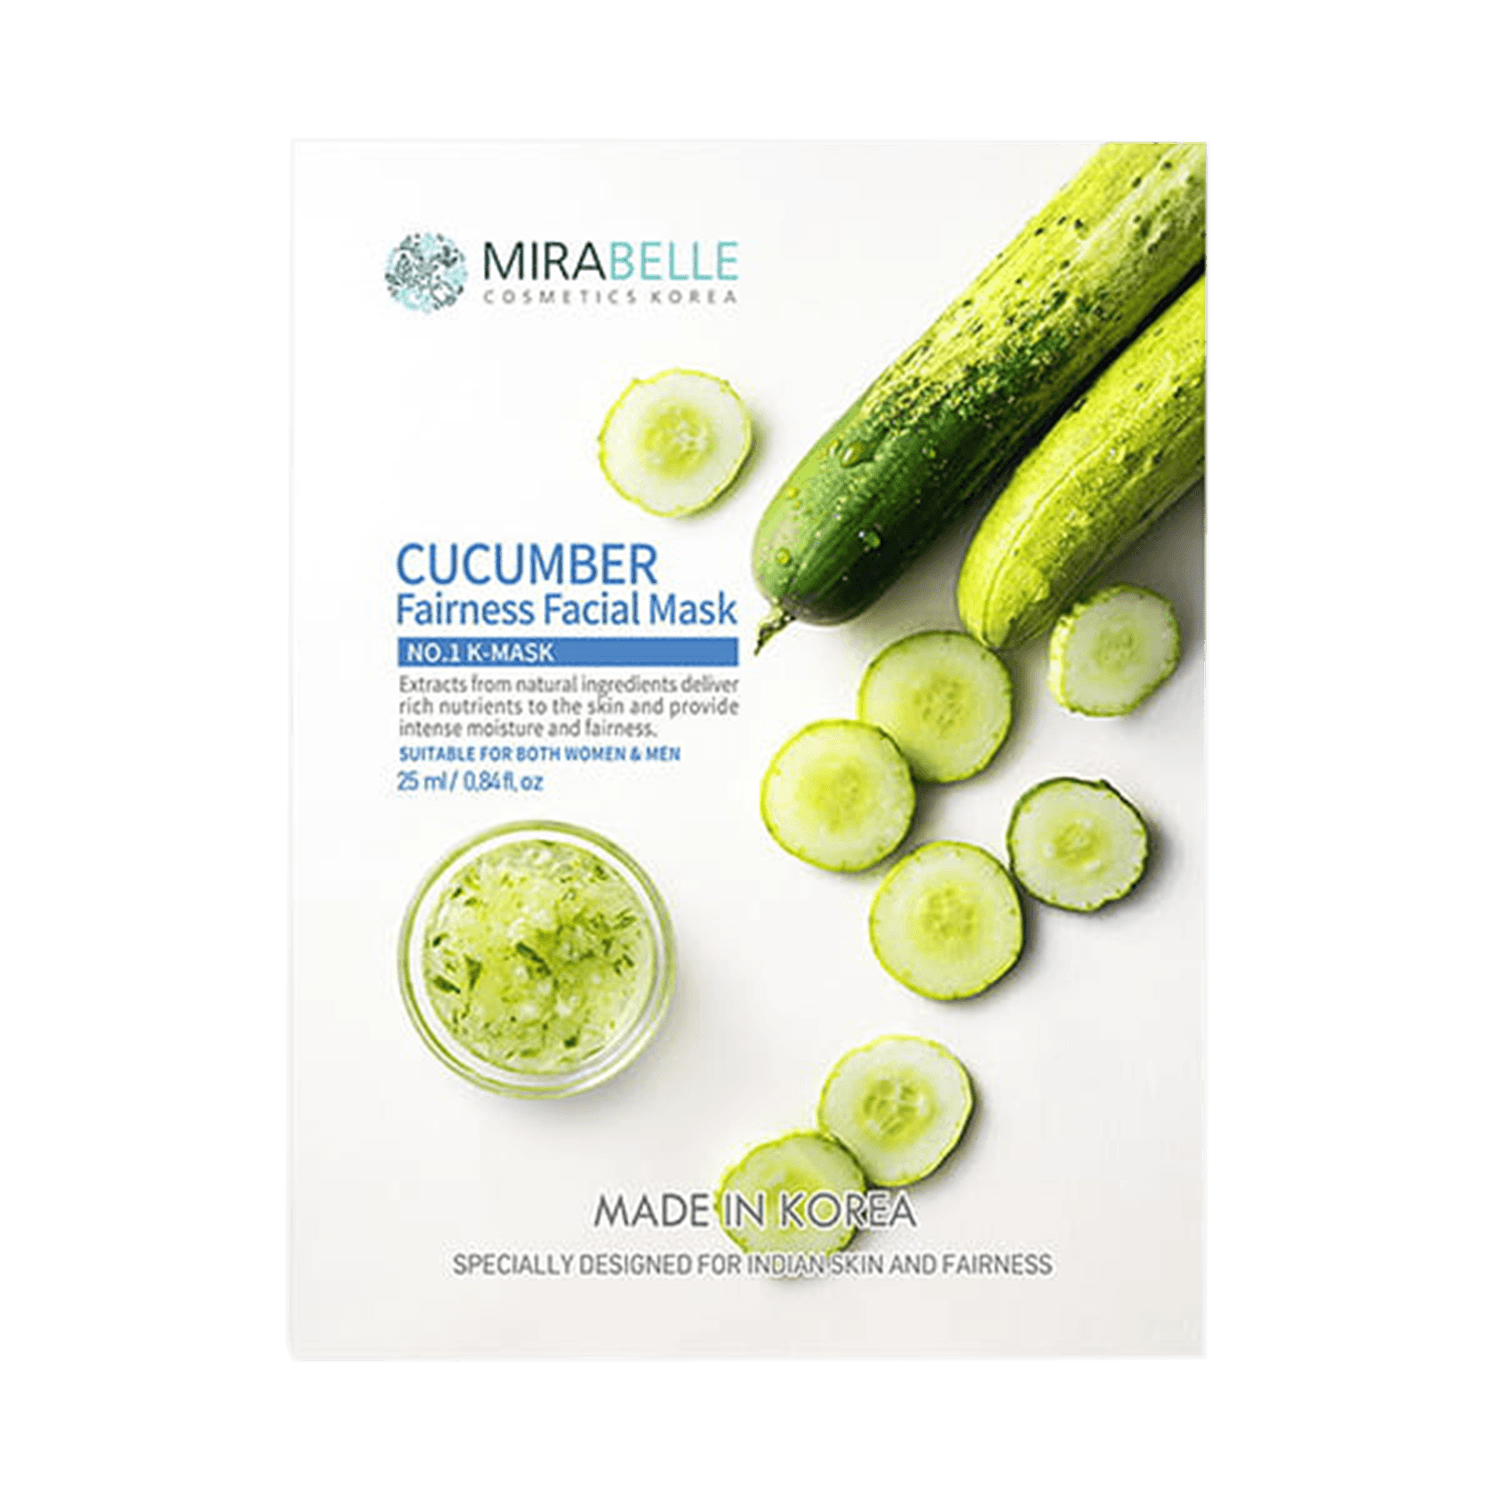 Mirabelle Cosmetics Korea | Mirabelle Cosmetics Korea Cucumber Fairness Facial Mask (25ml)